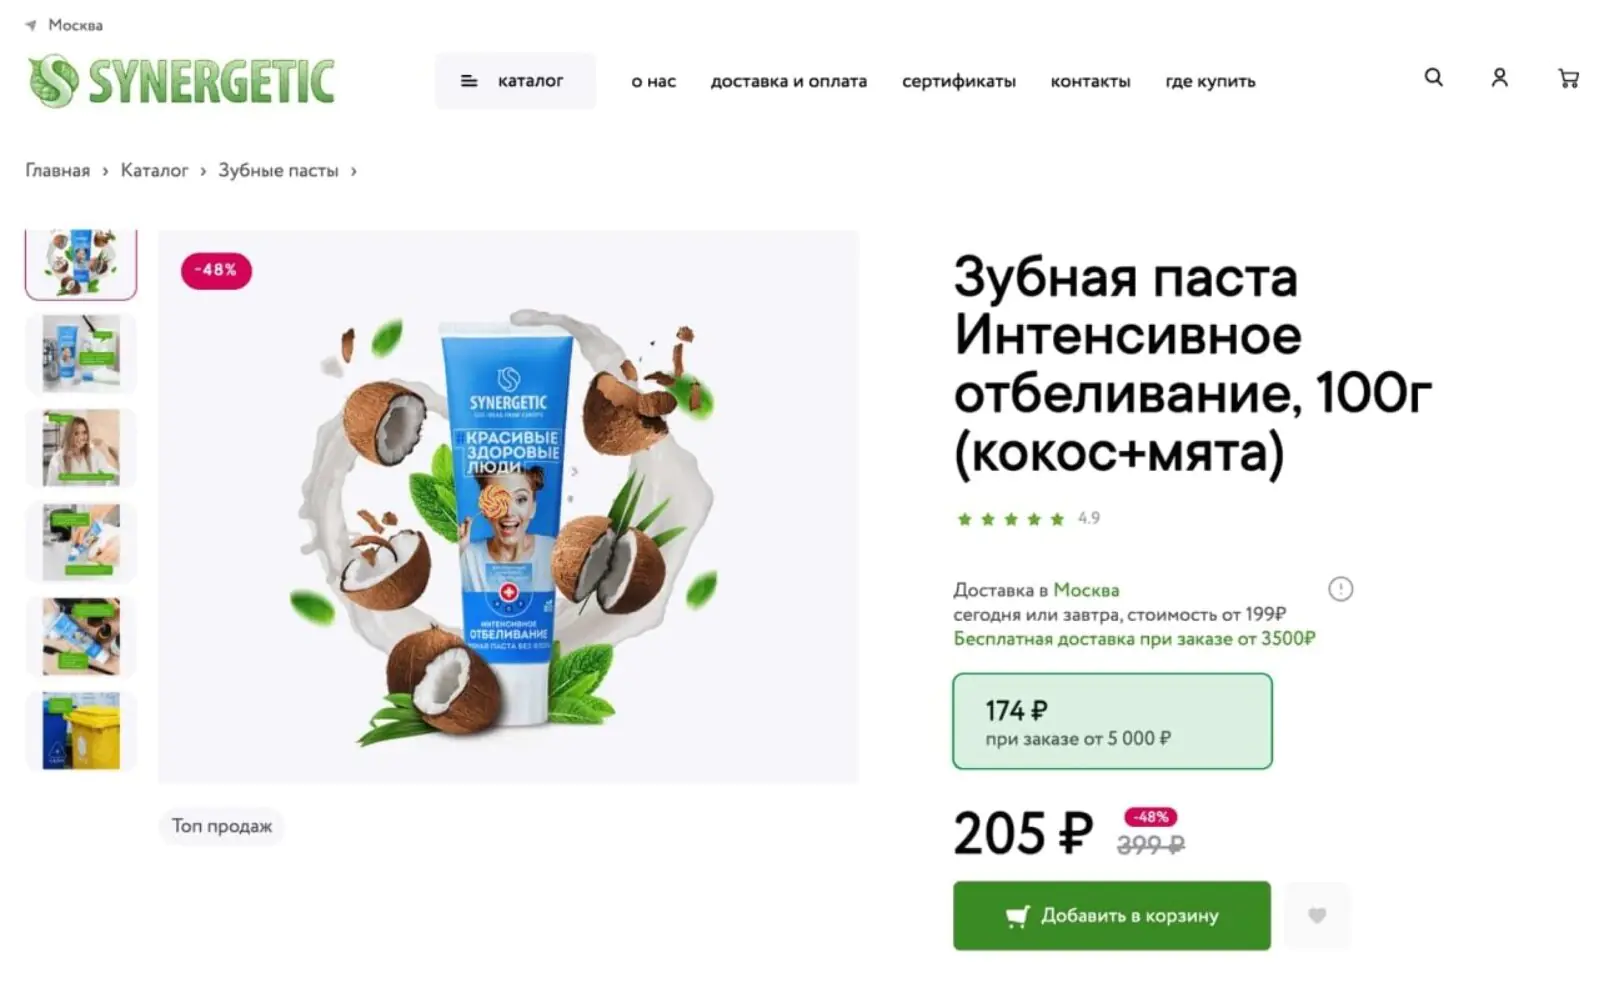 Synergetic рассказывает о скидке 15% при заказе от 5000 рублей